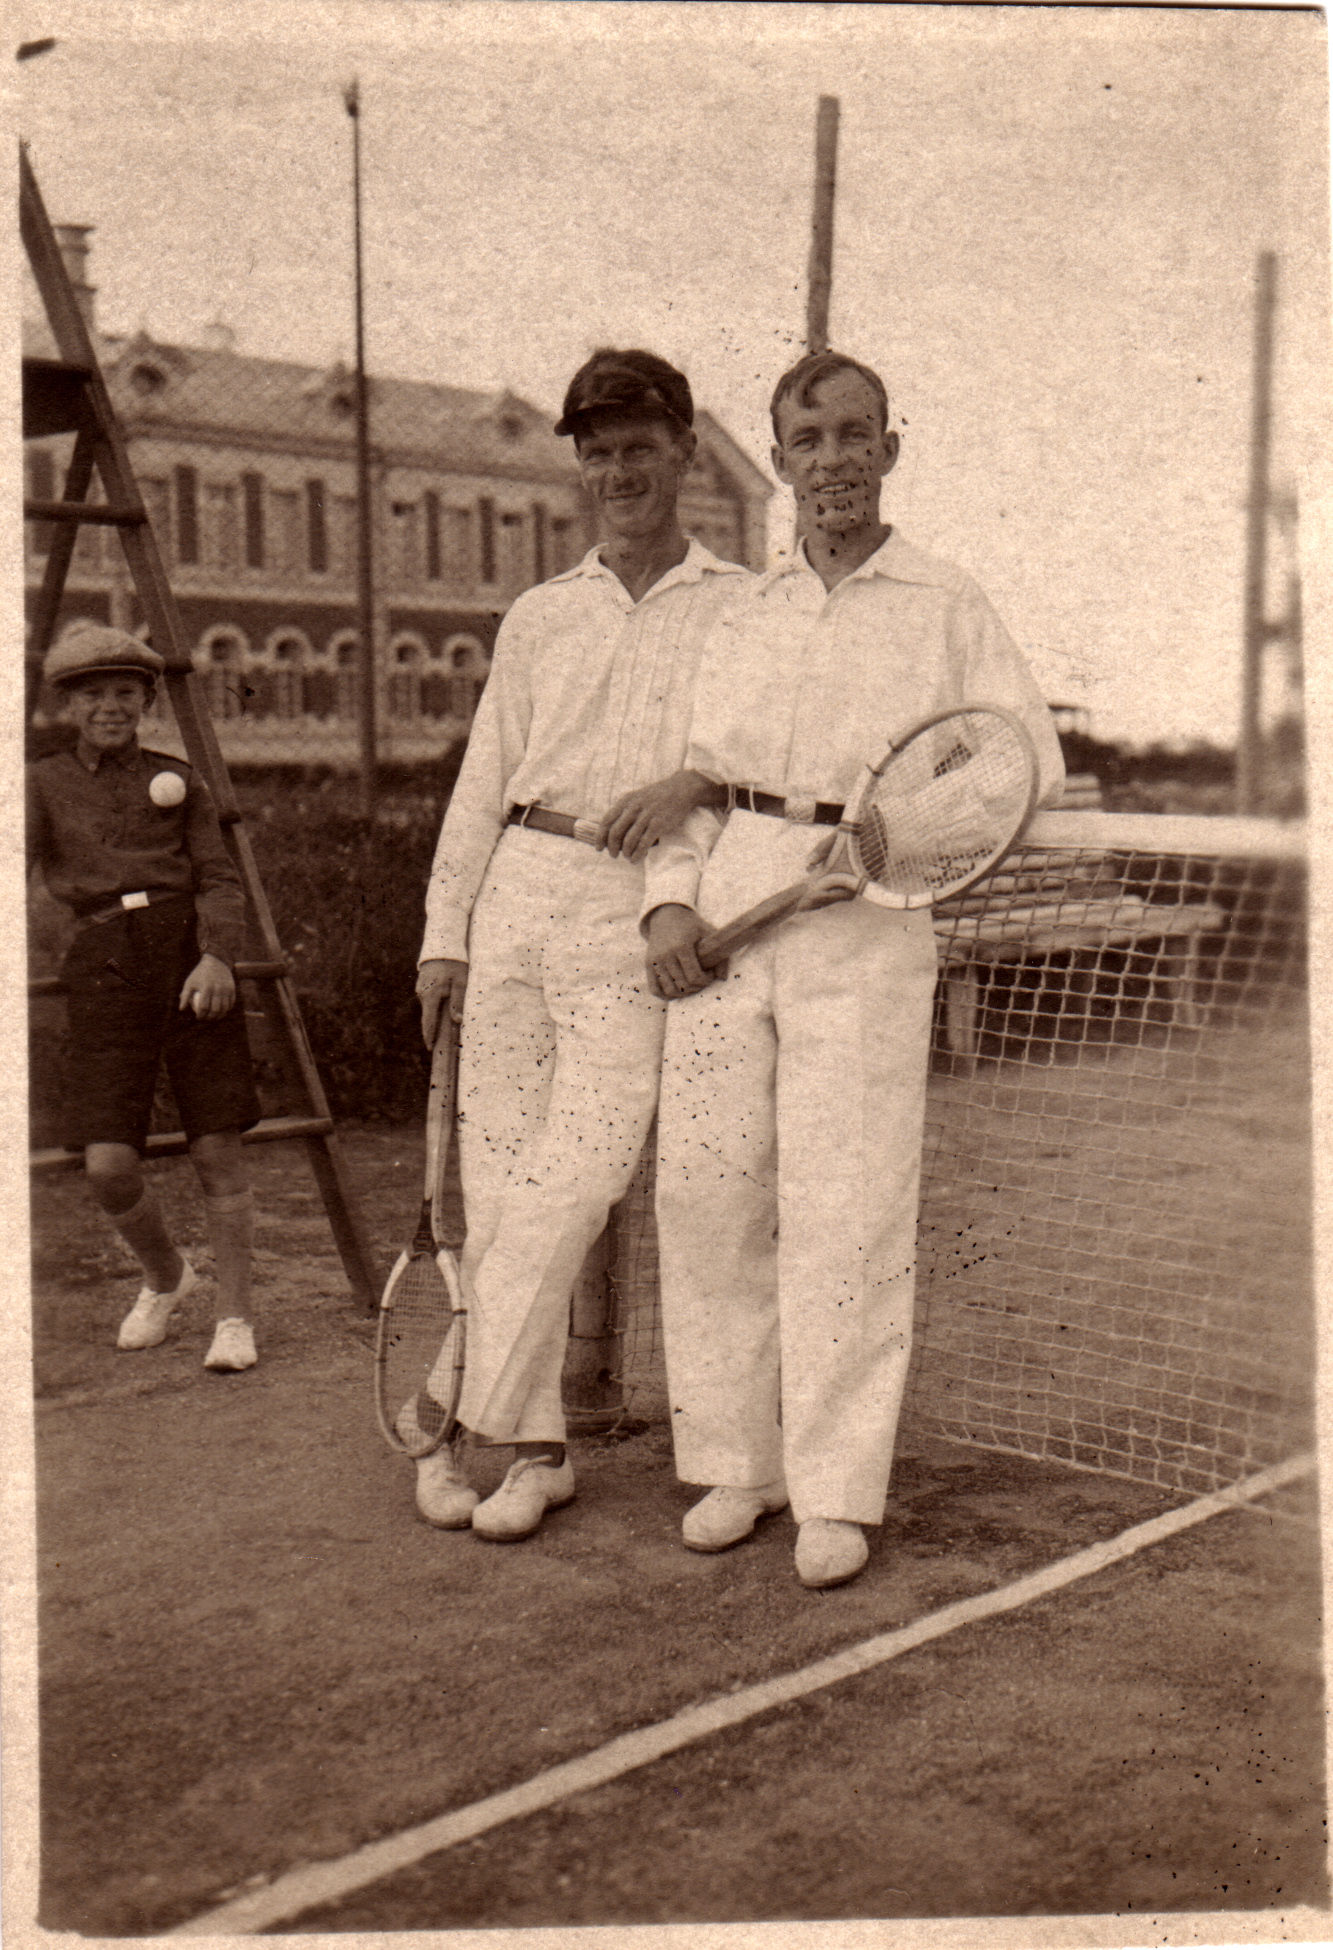 Tennisistid Adolf Säkk ja Viktor Malts